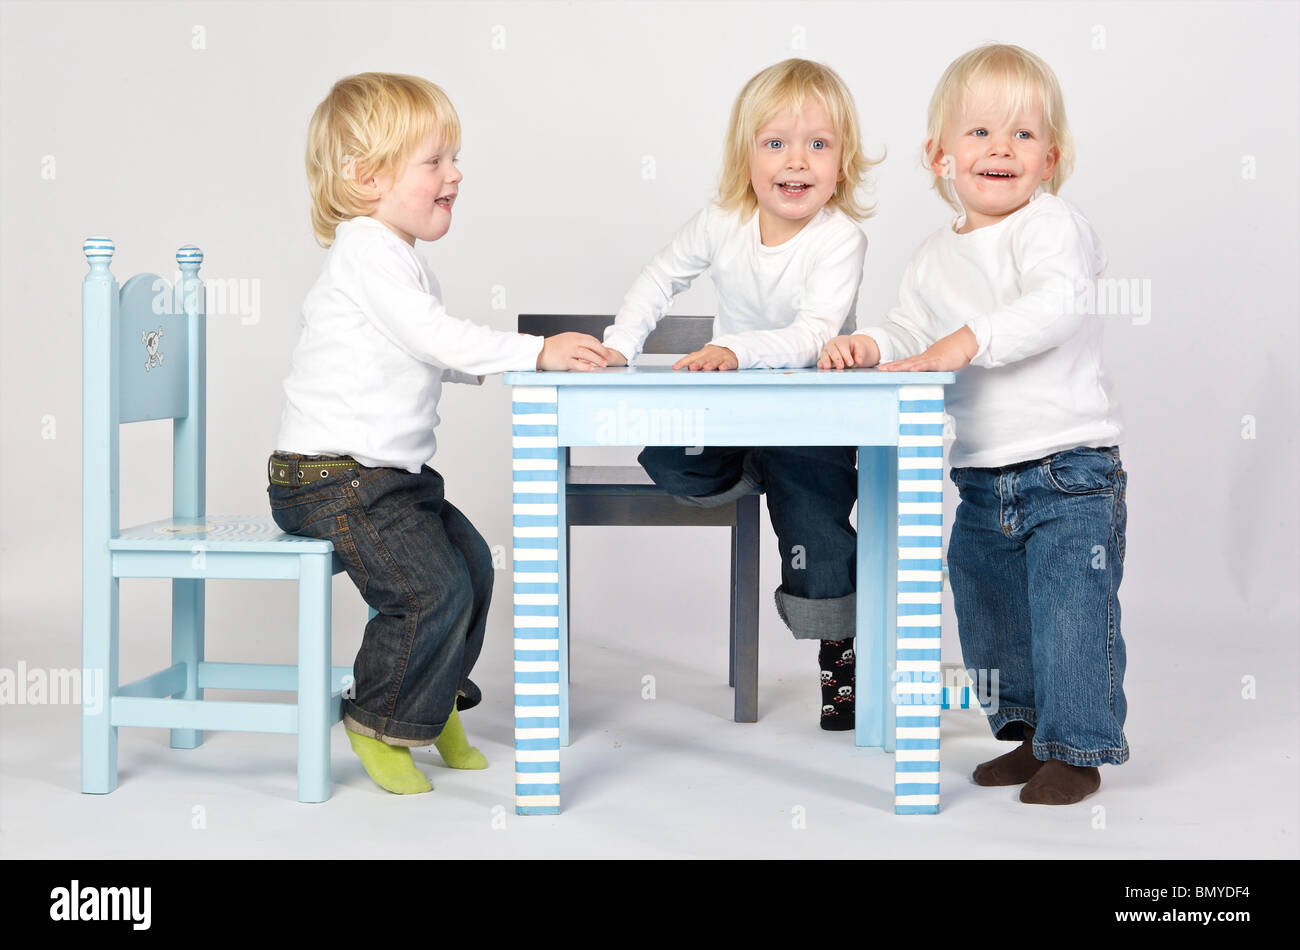 2-3 ans 3-4 ans bleu garçon blond caucasien enfant enfants émotion néerlandais ethnicité ethniques europa europe european eye feelin Banque D'Images